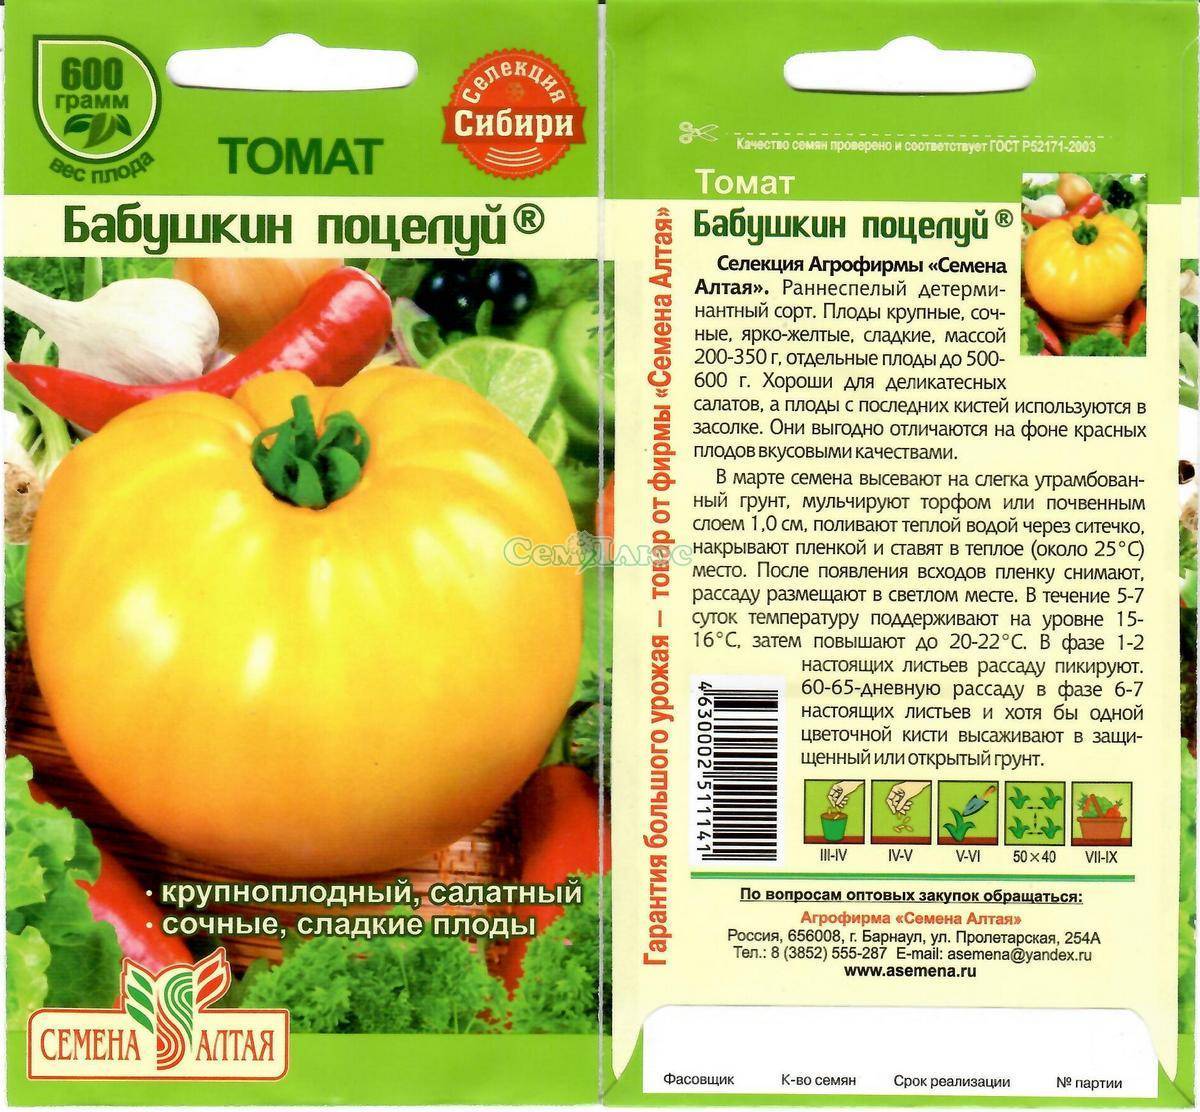 Сорт томата «бабушкин секрет» - описание, фото, урожайность